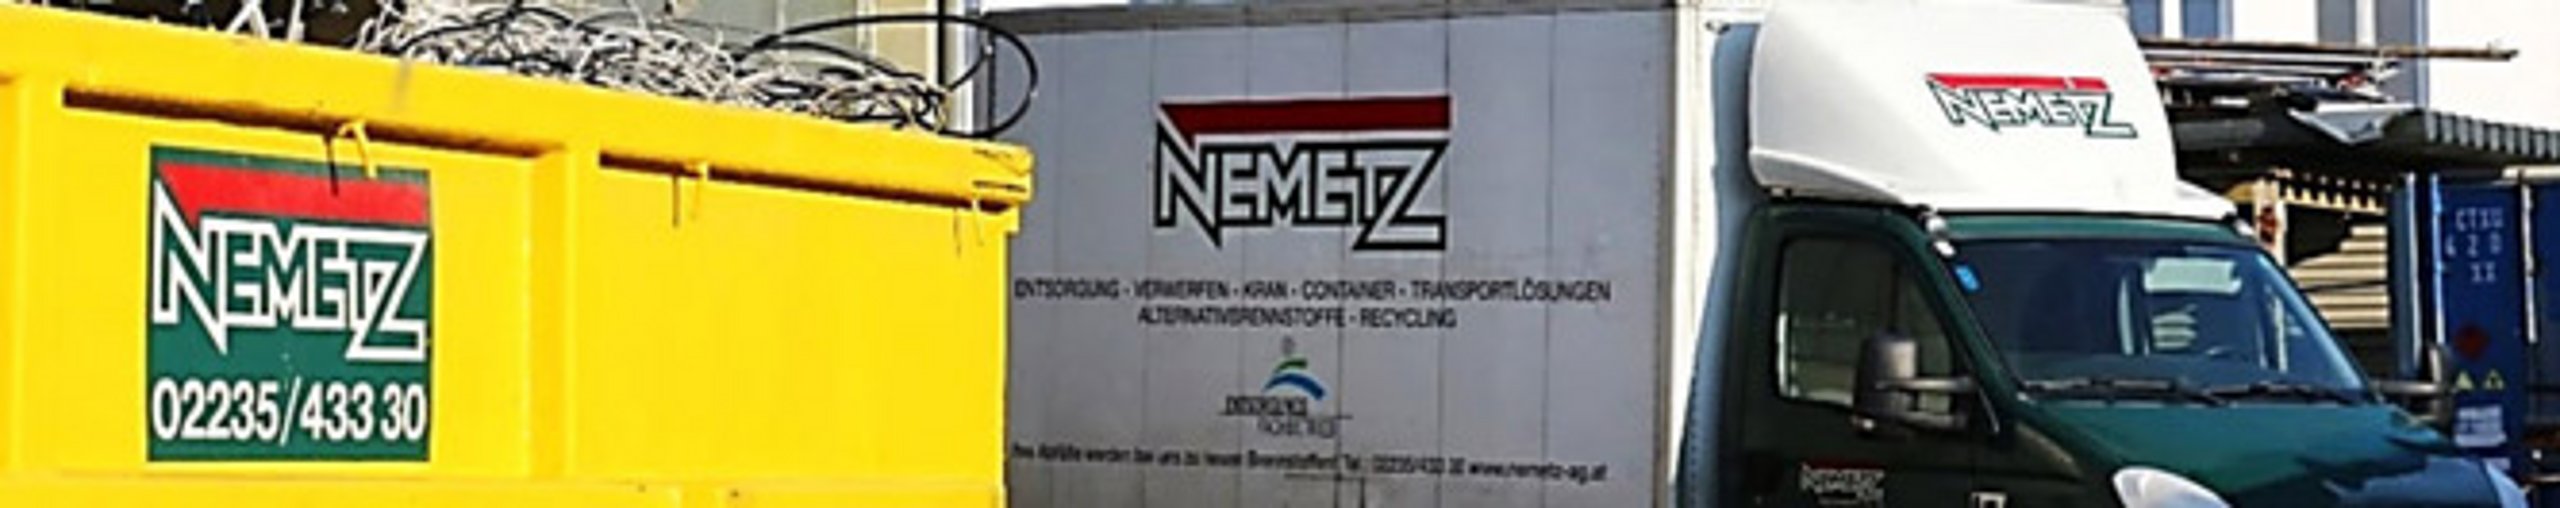 REDWAVE Case Study - Kunststoffaufbereitungsanlage - Nemetz